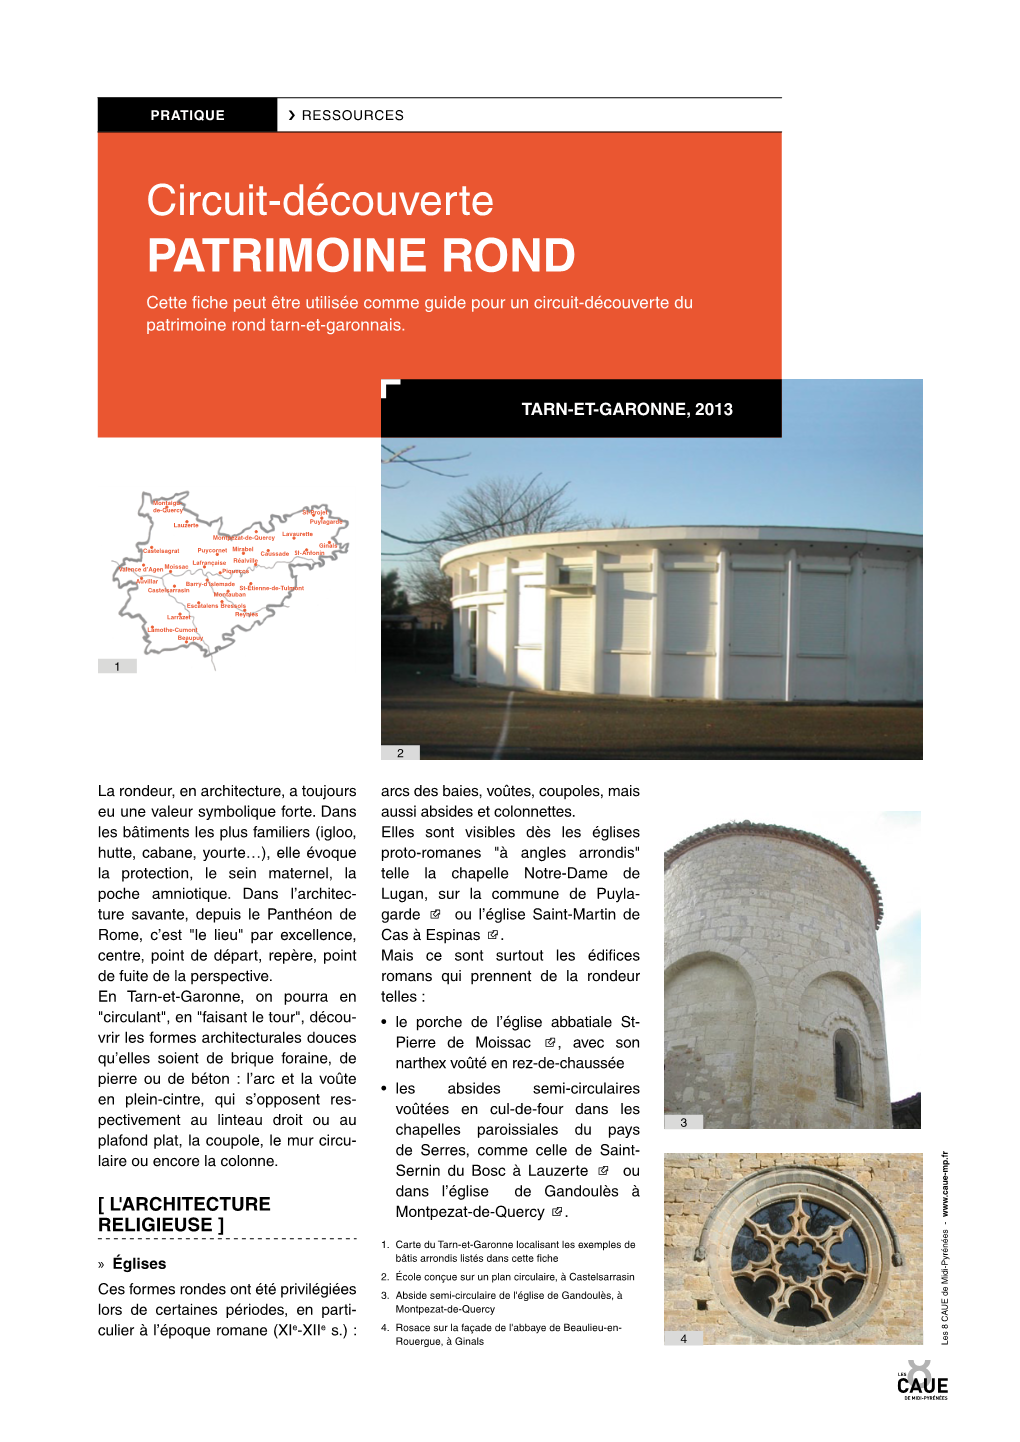 PATRIMOINE ROND Cette Fiche Peut Être Utilisée Comme Guide Pour Un Circuit-Découverte Du Patrimoine Rond Tarn-Et-Garonnais